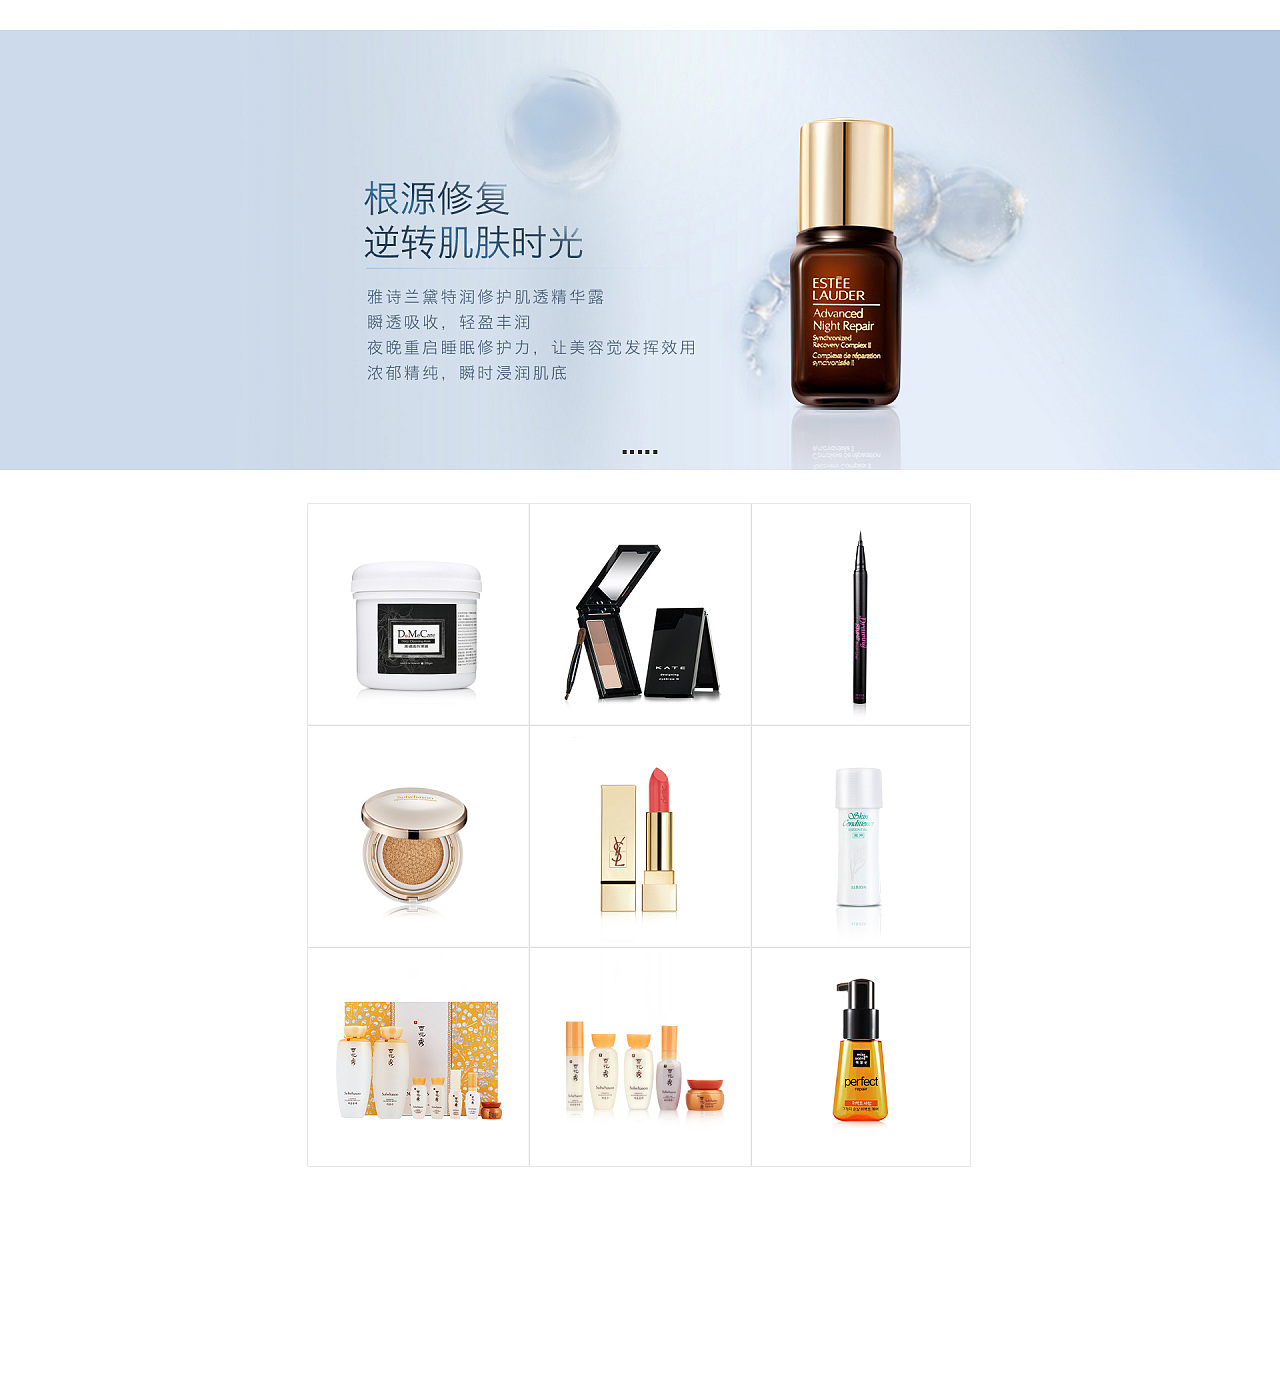 电商美妆店网页设计--简单清新风格